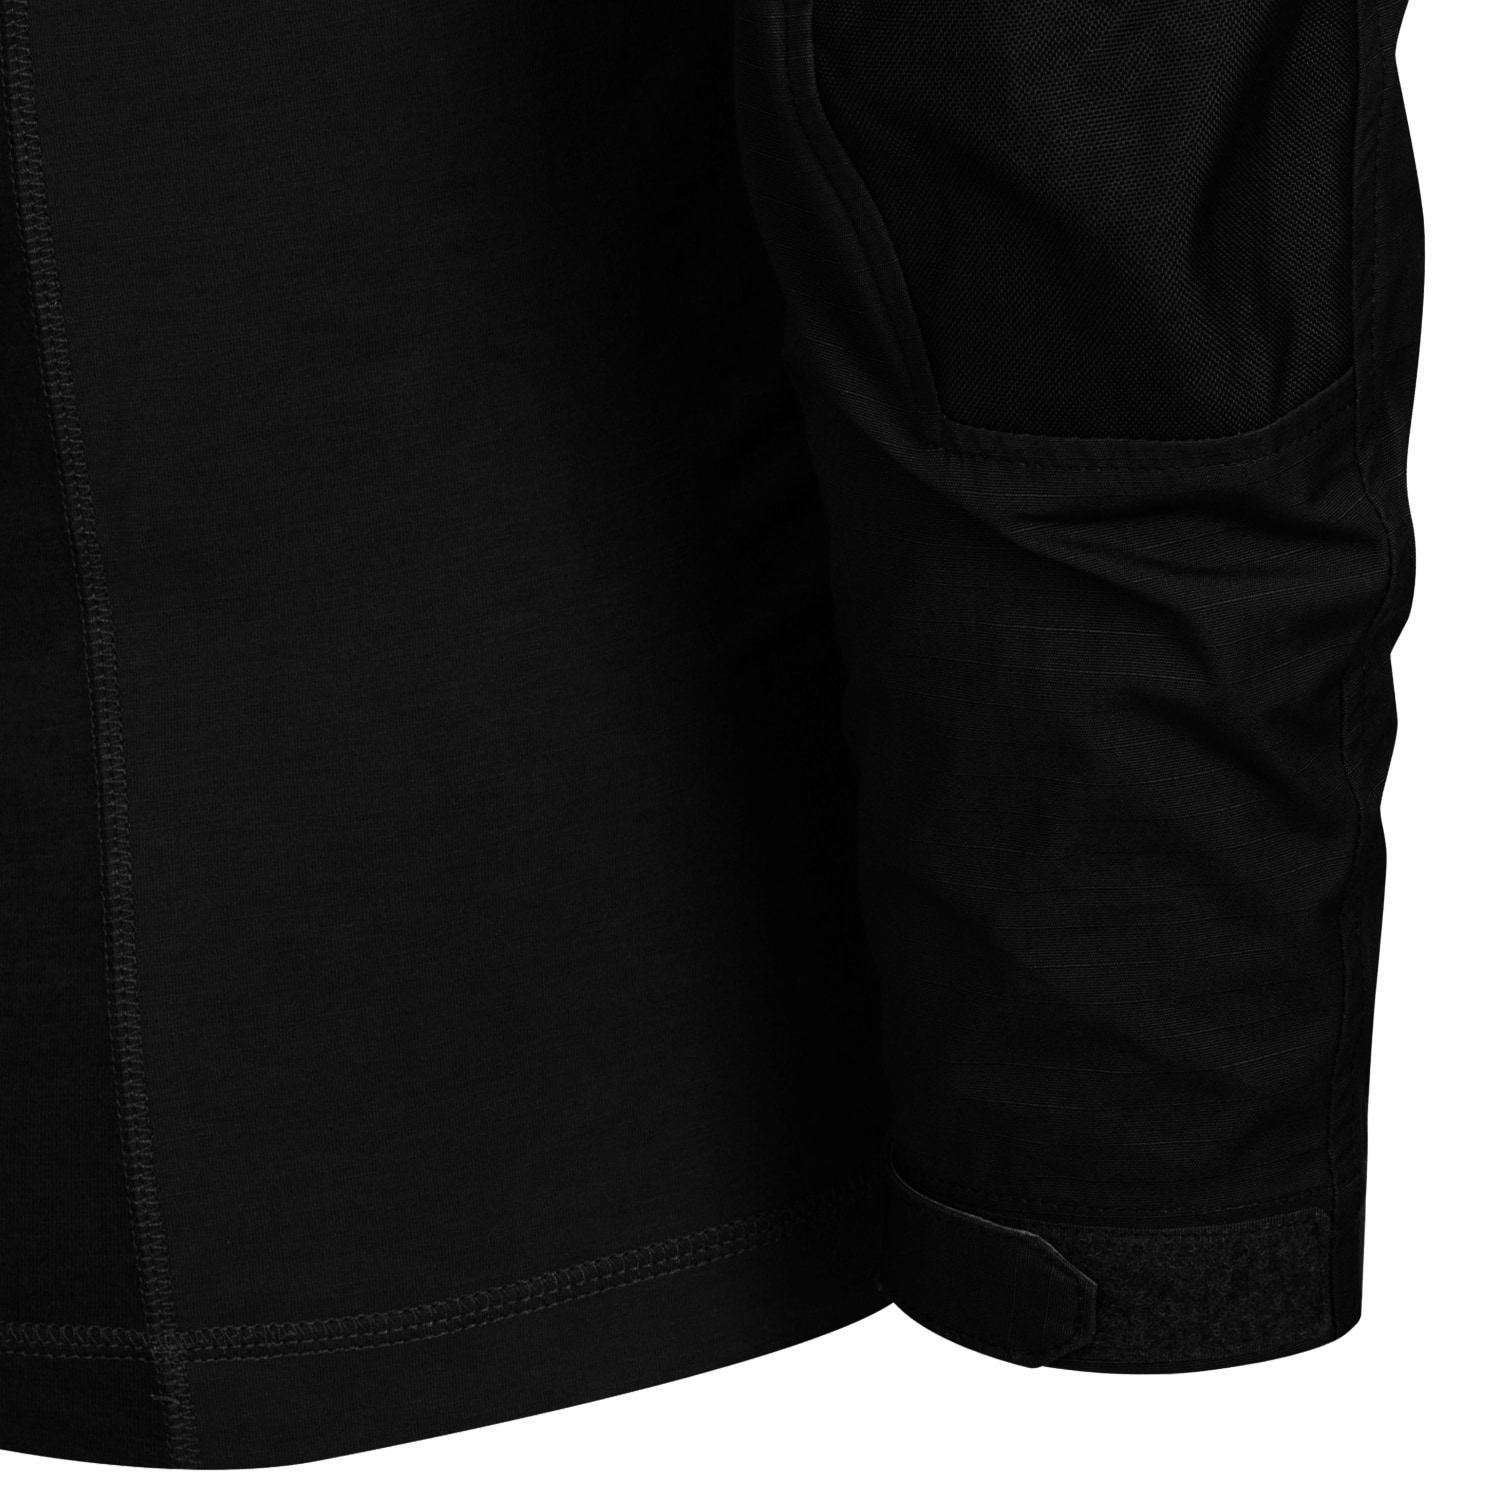 Bluza Direct Action Combat Shirt Vanguard - Black 